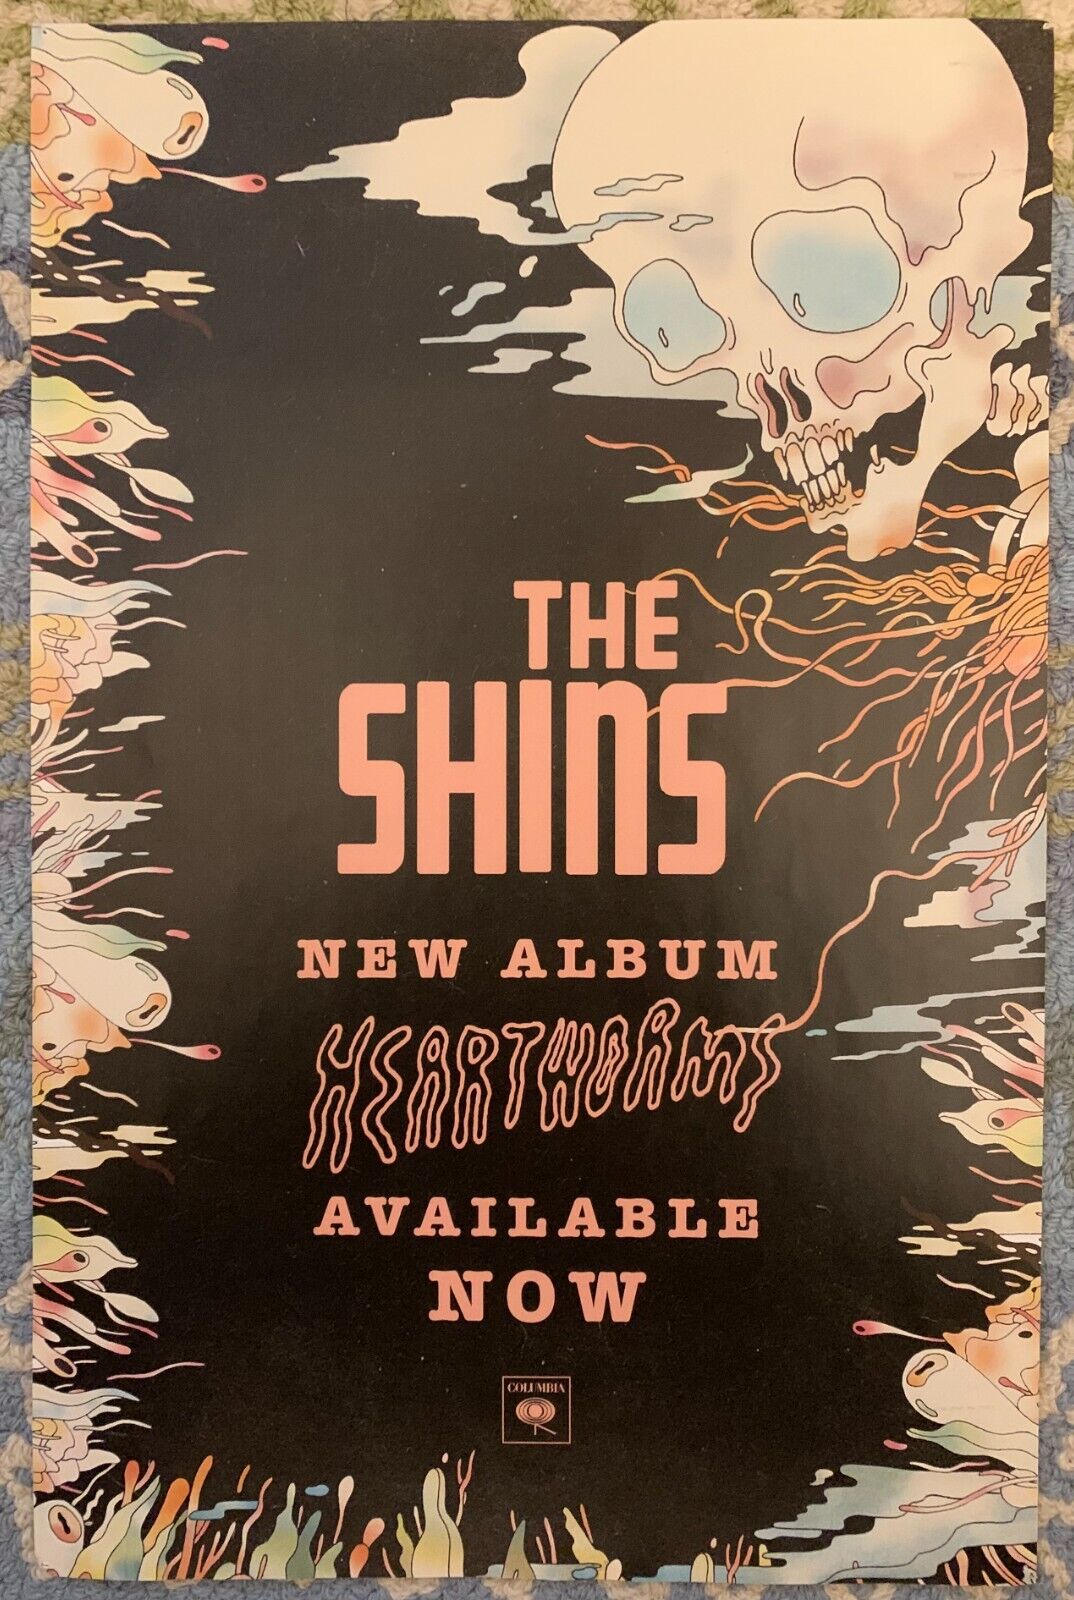 The Shins - Heartw*rms Album Original Promo Poster 11x17